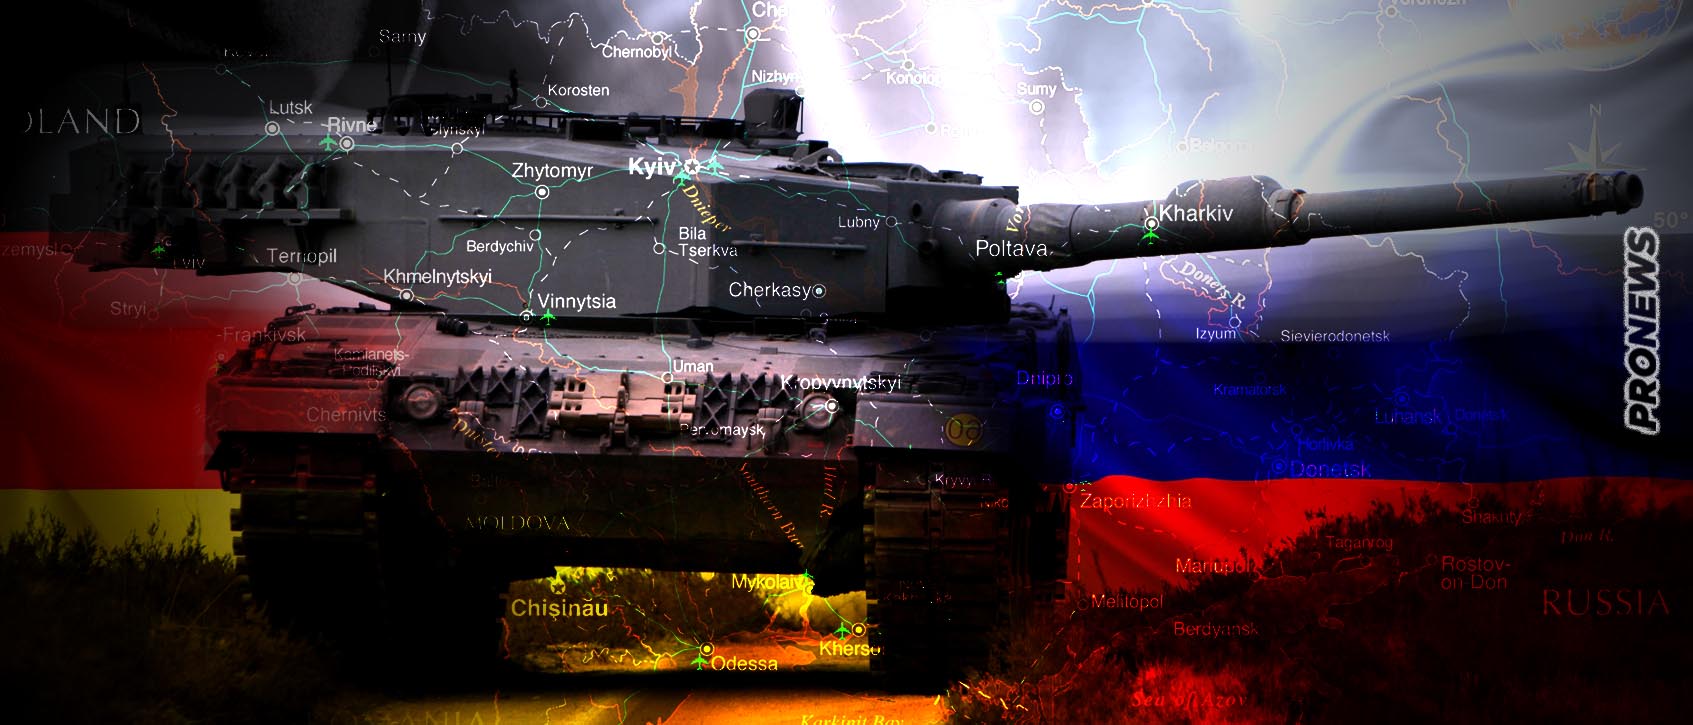 Μόσχα: «Η αποστολή των Leopard στον πόλεμο σημαίνει ότι το Βερολίνο αρνείται τα εγκλήματα του Ναζισμού – Θα υποστούν τις συνέπειες»